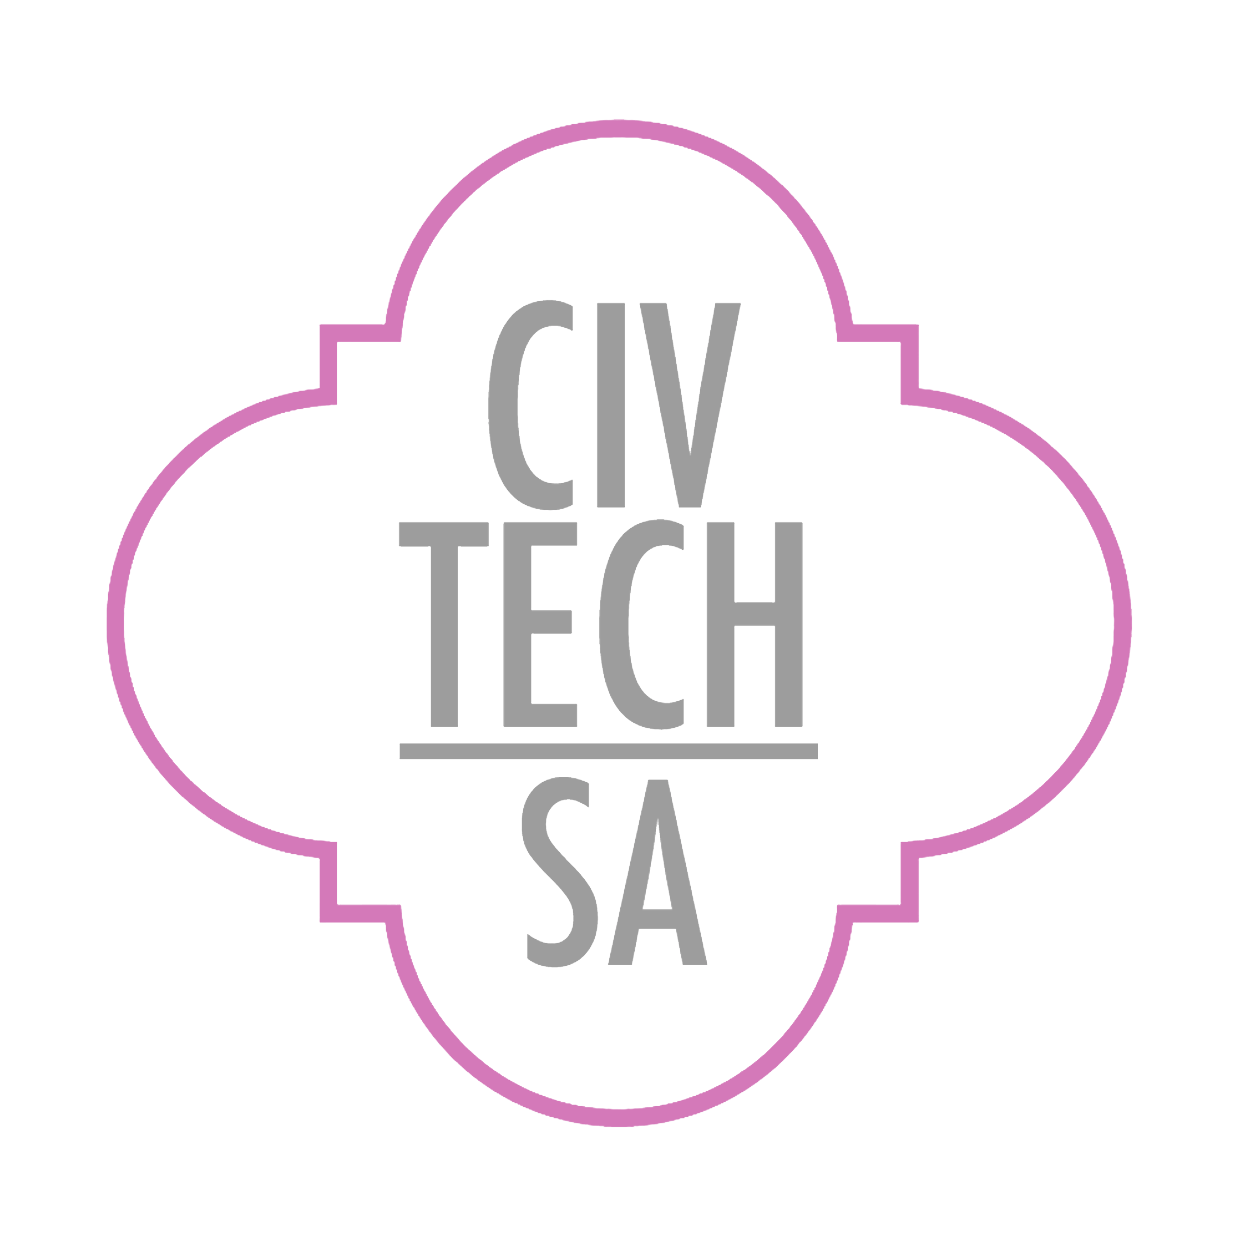 CivTech-SA